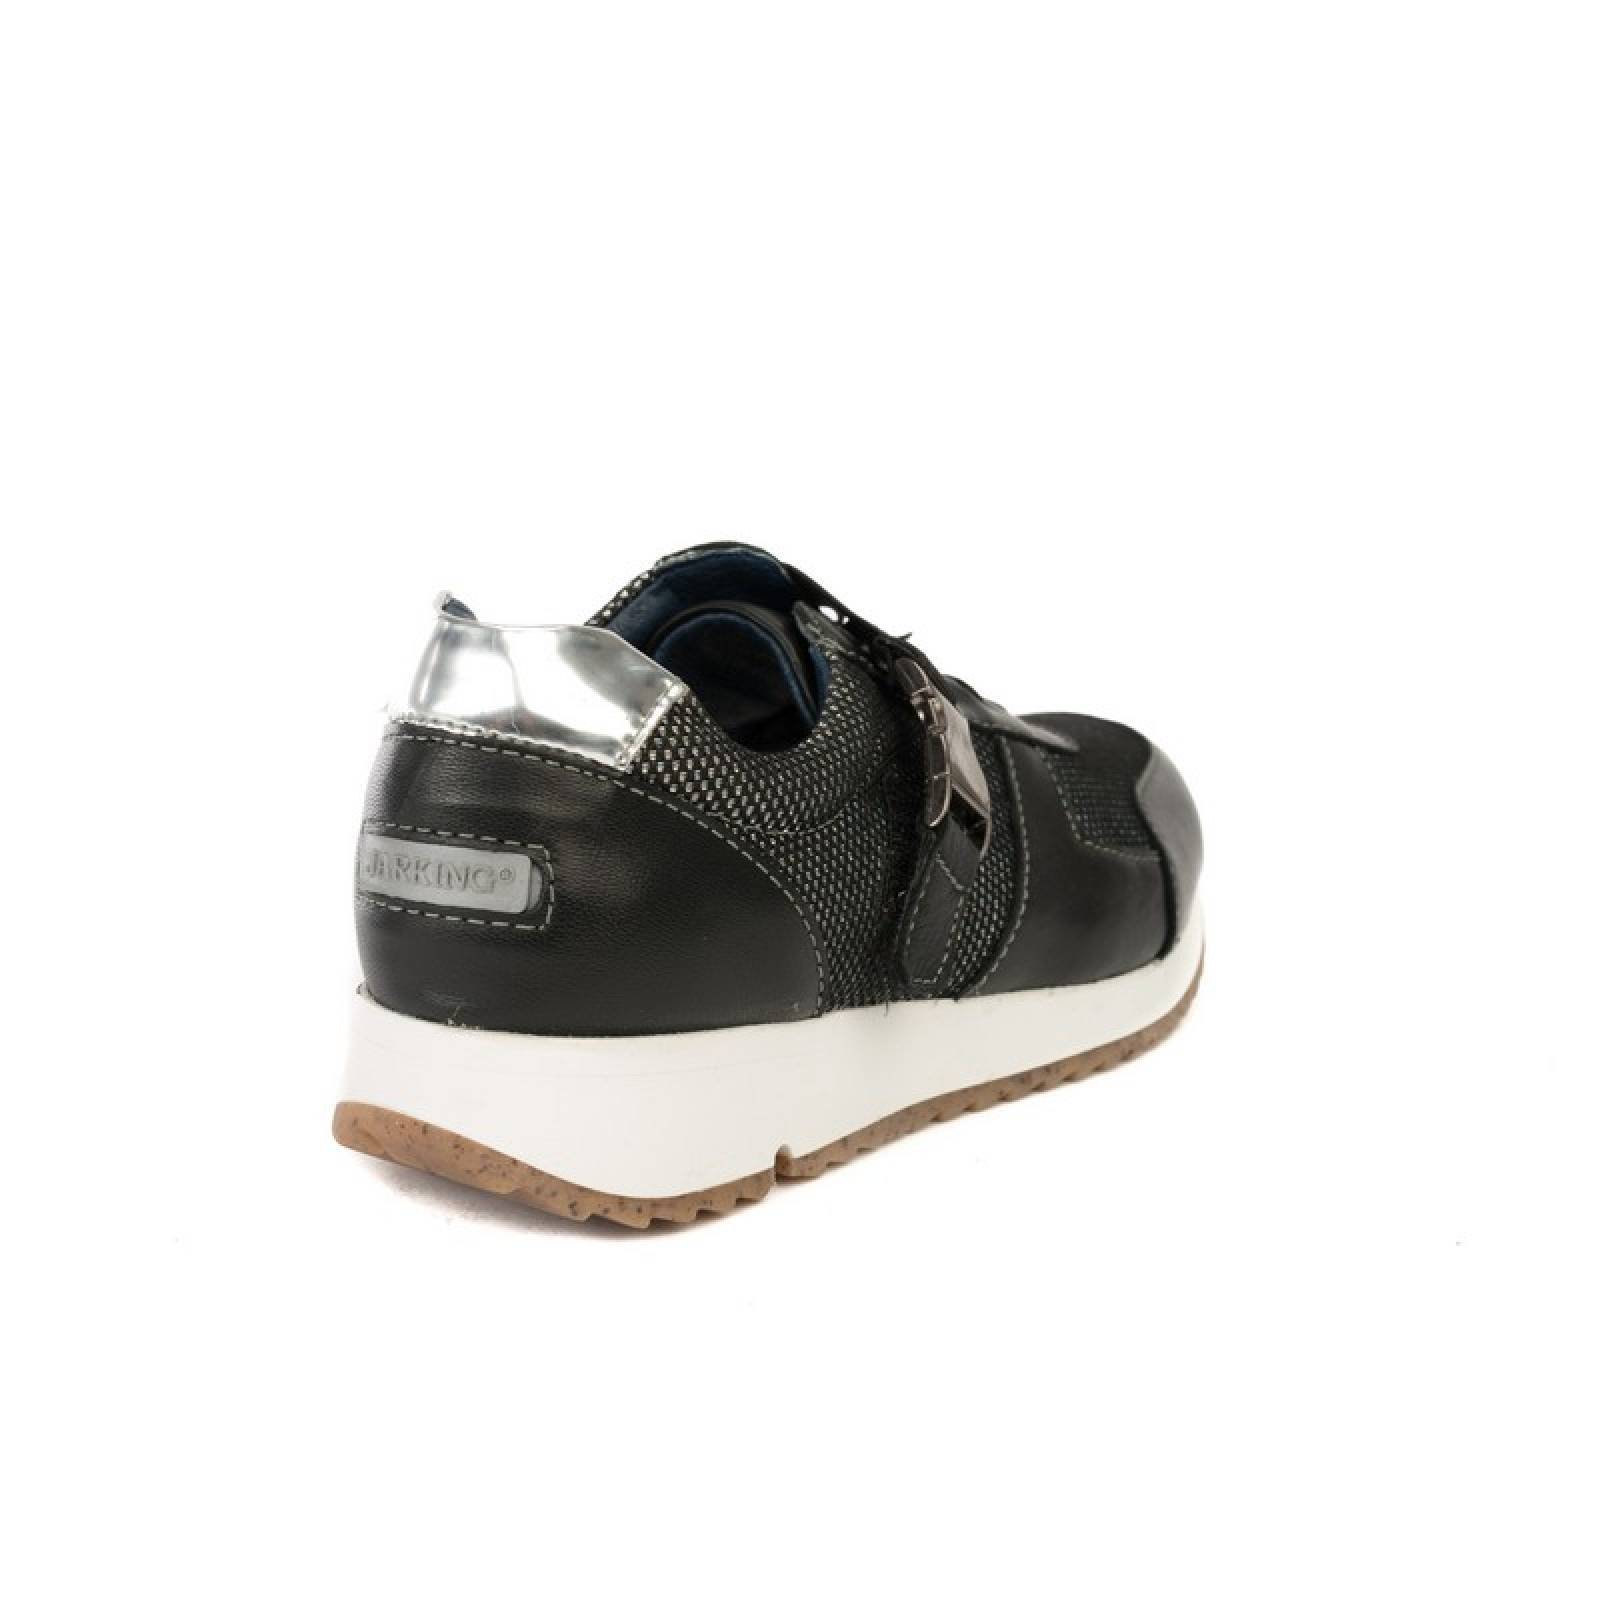 Jarking - Zapato Casual Sport Negro de Piel con Agujetas y Velcro para Dama